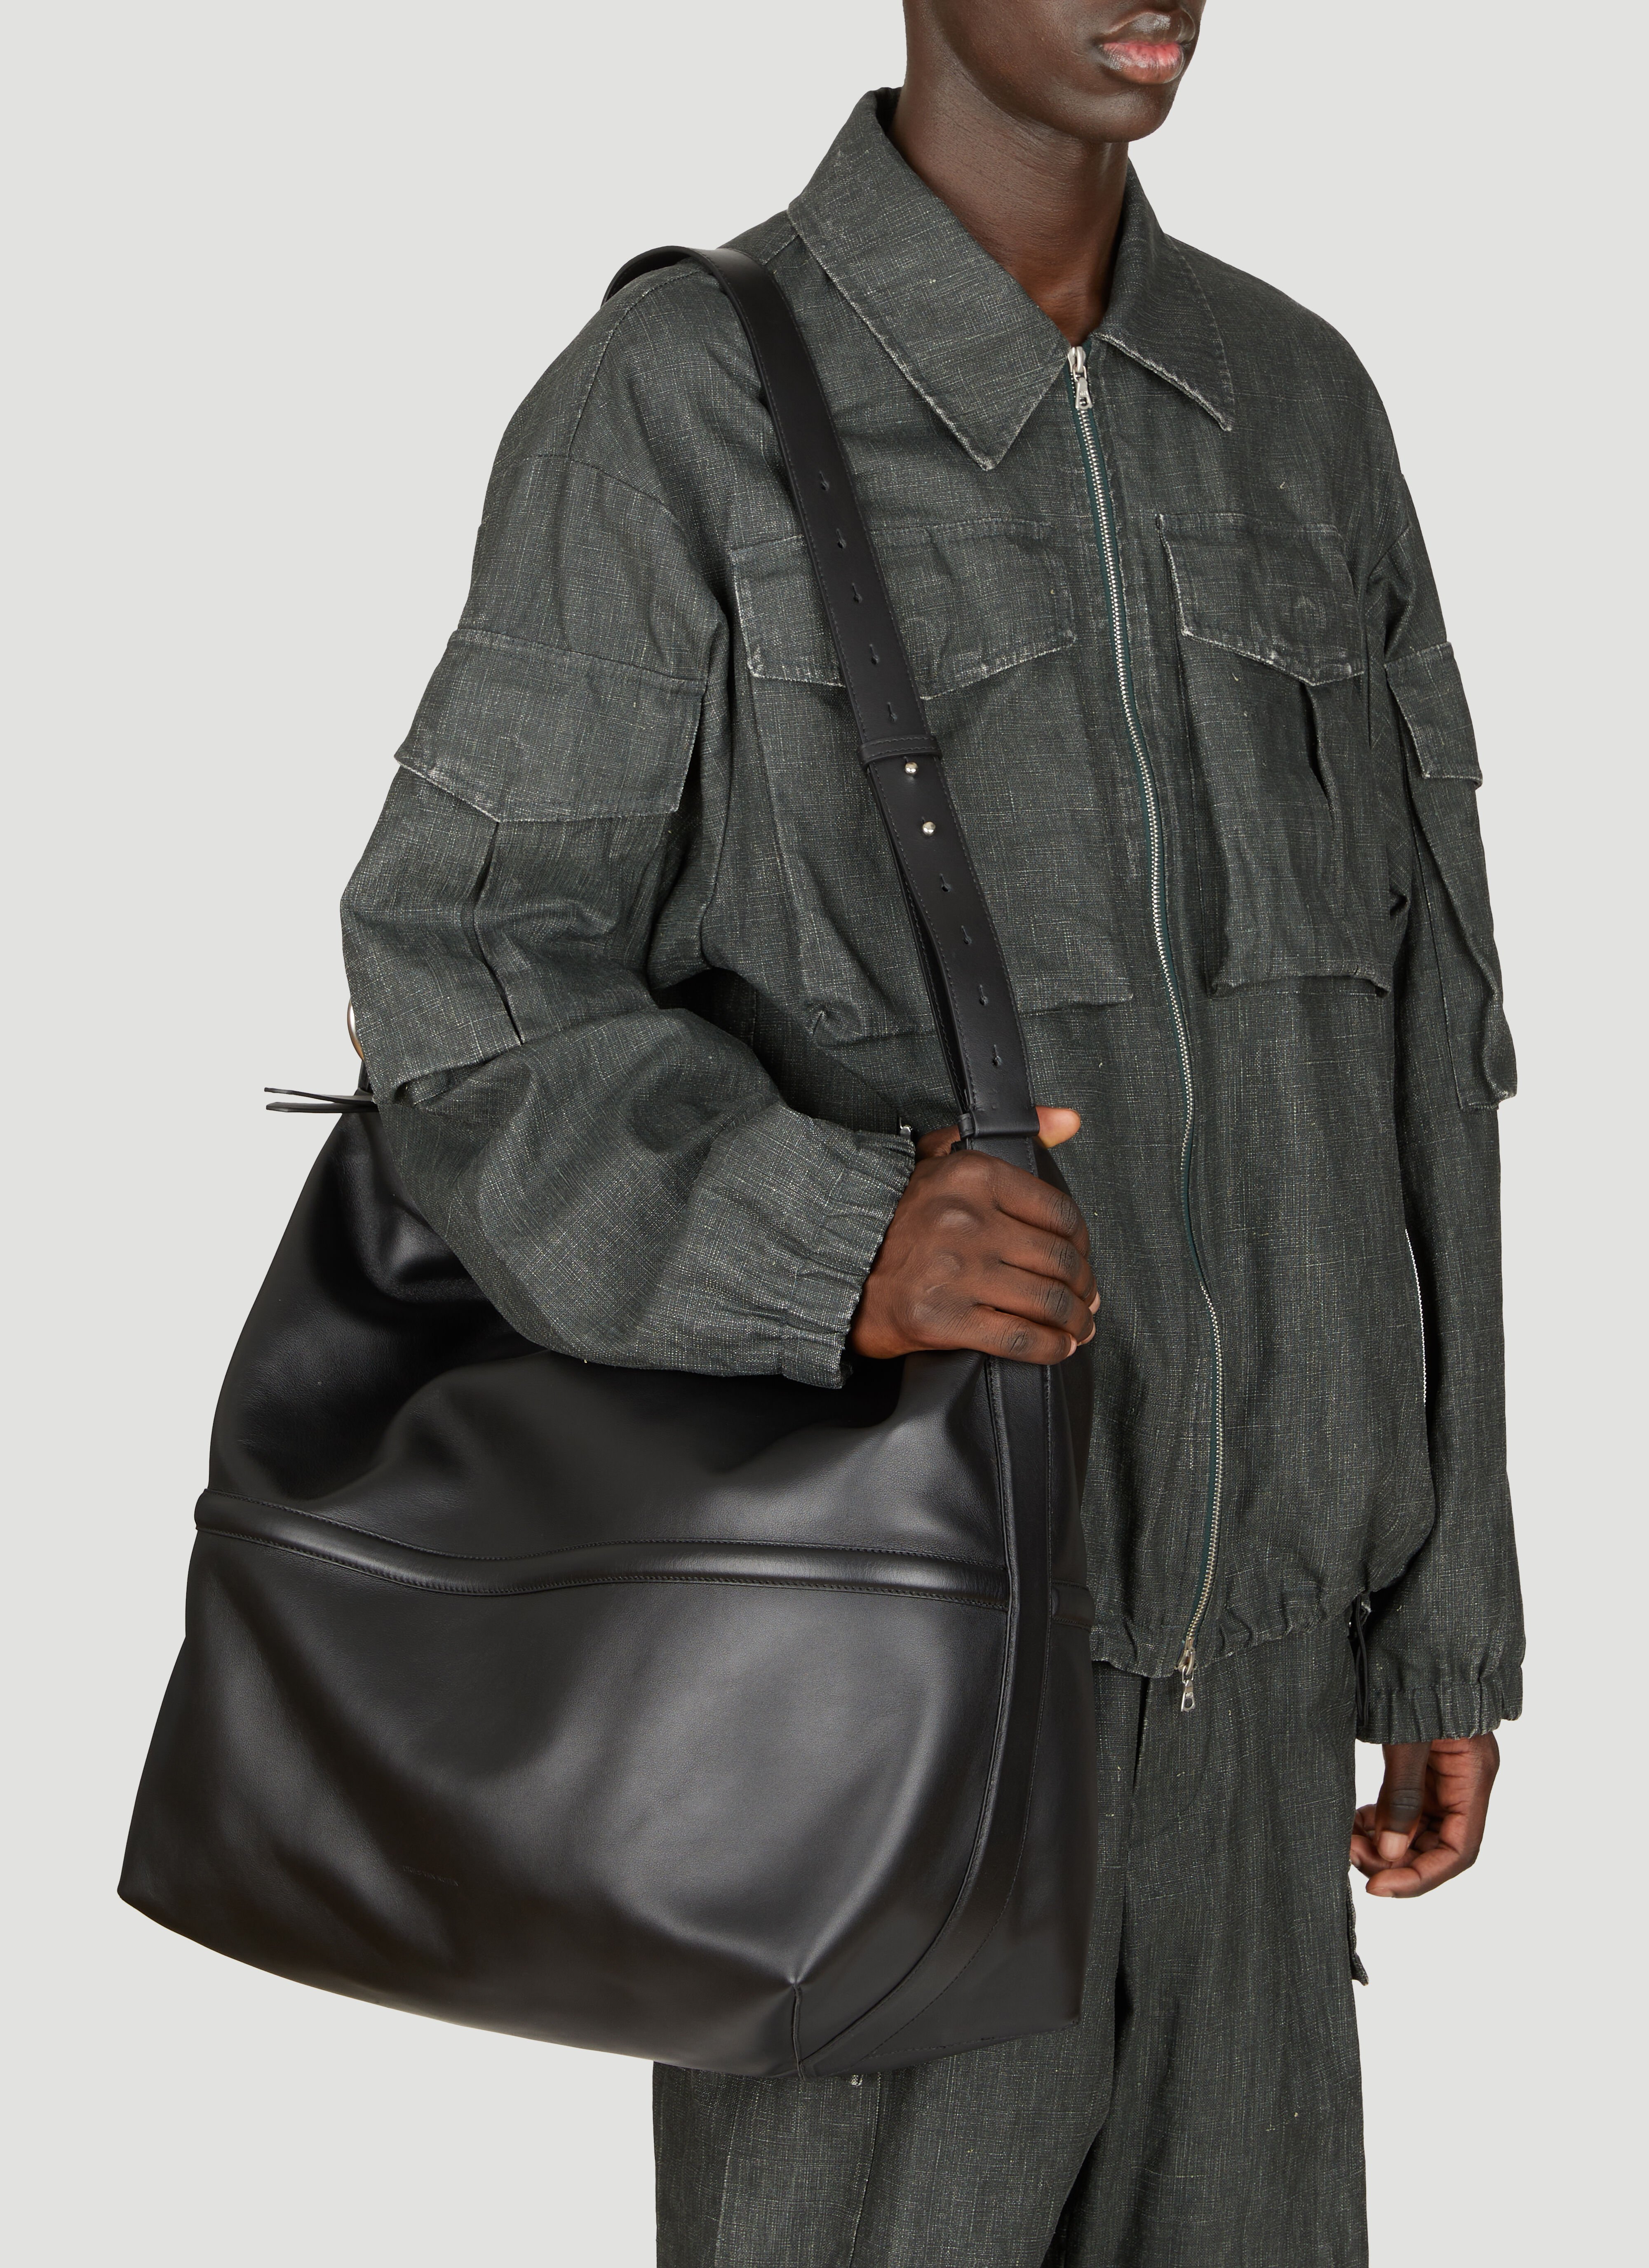 Dries Van Noten Leather Crossbody Bag Grey dvn0156010